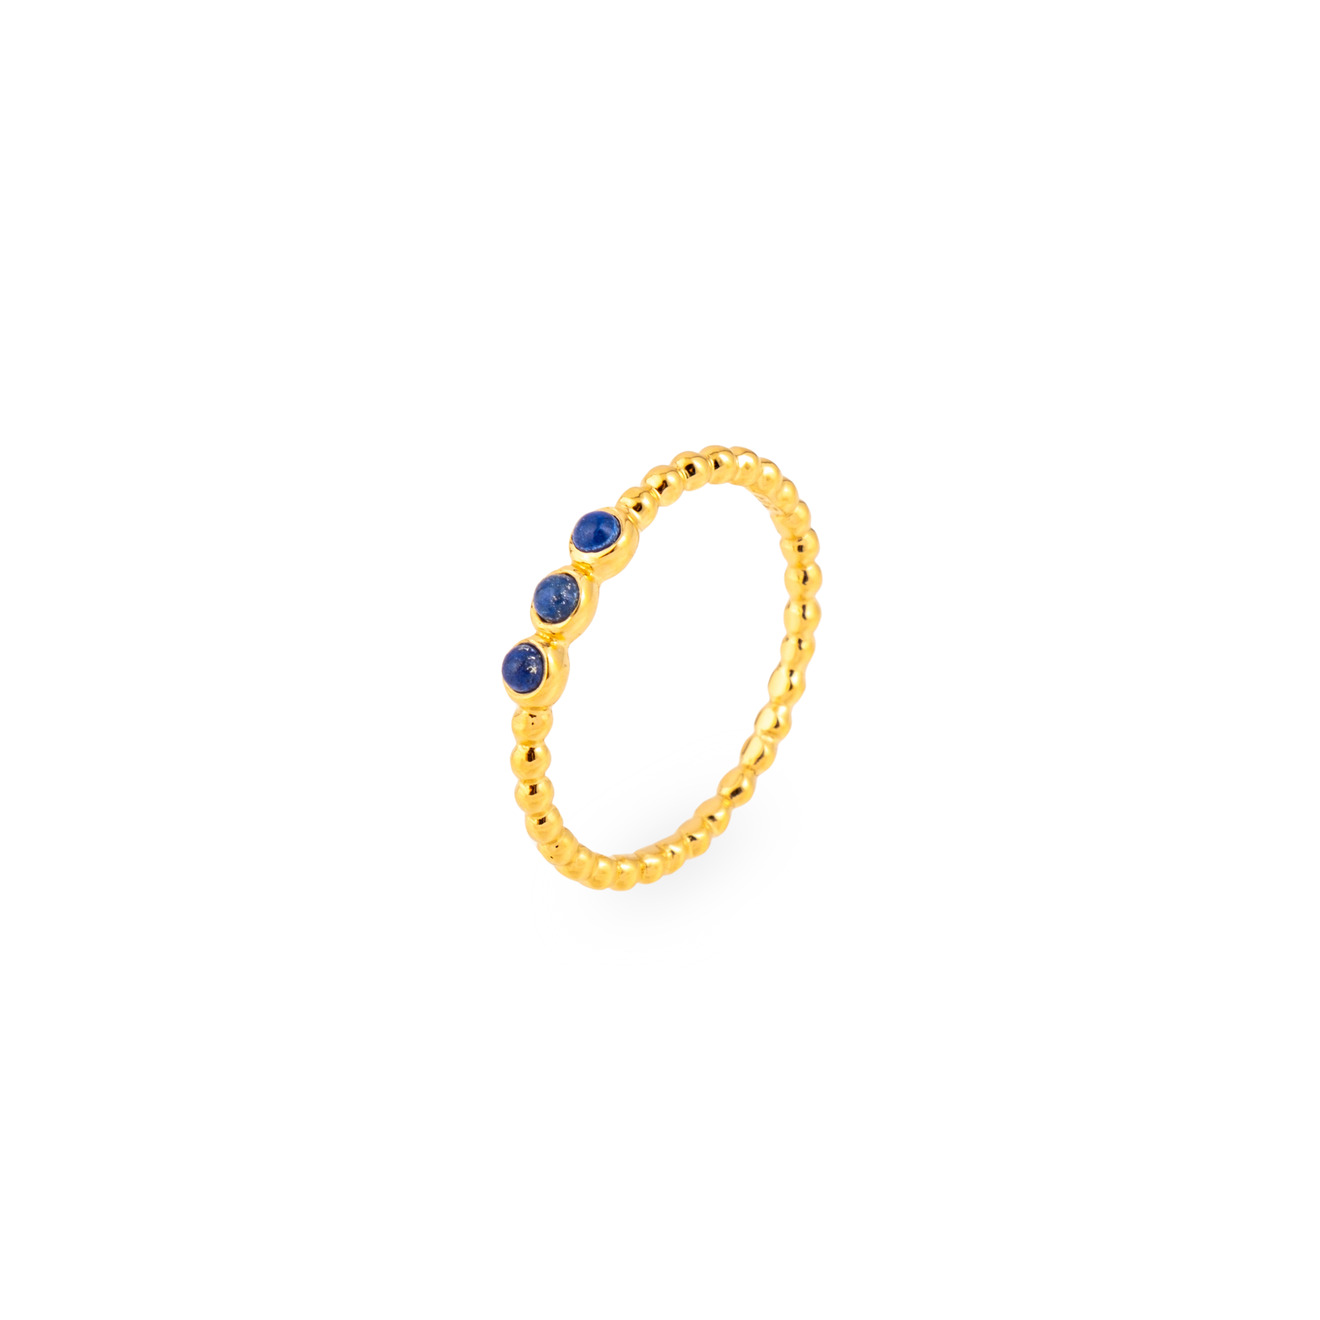 wisteria gems позолоченное кольцо из микса камней граната и лабрадорита Wisteria Gems Позолоченное кольцо с лазуритами